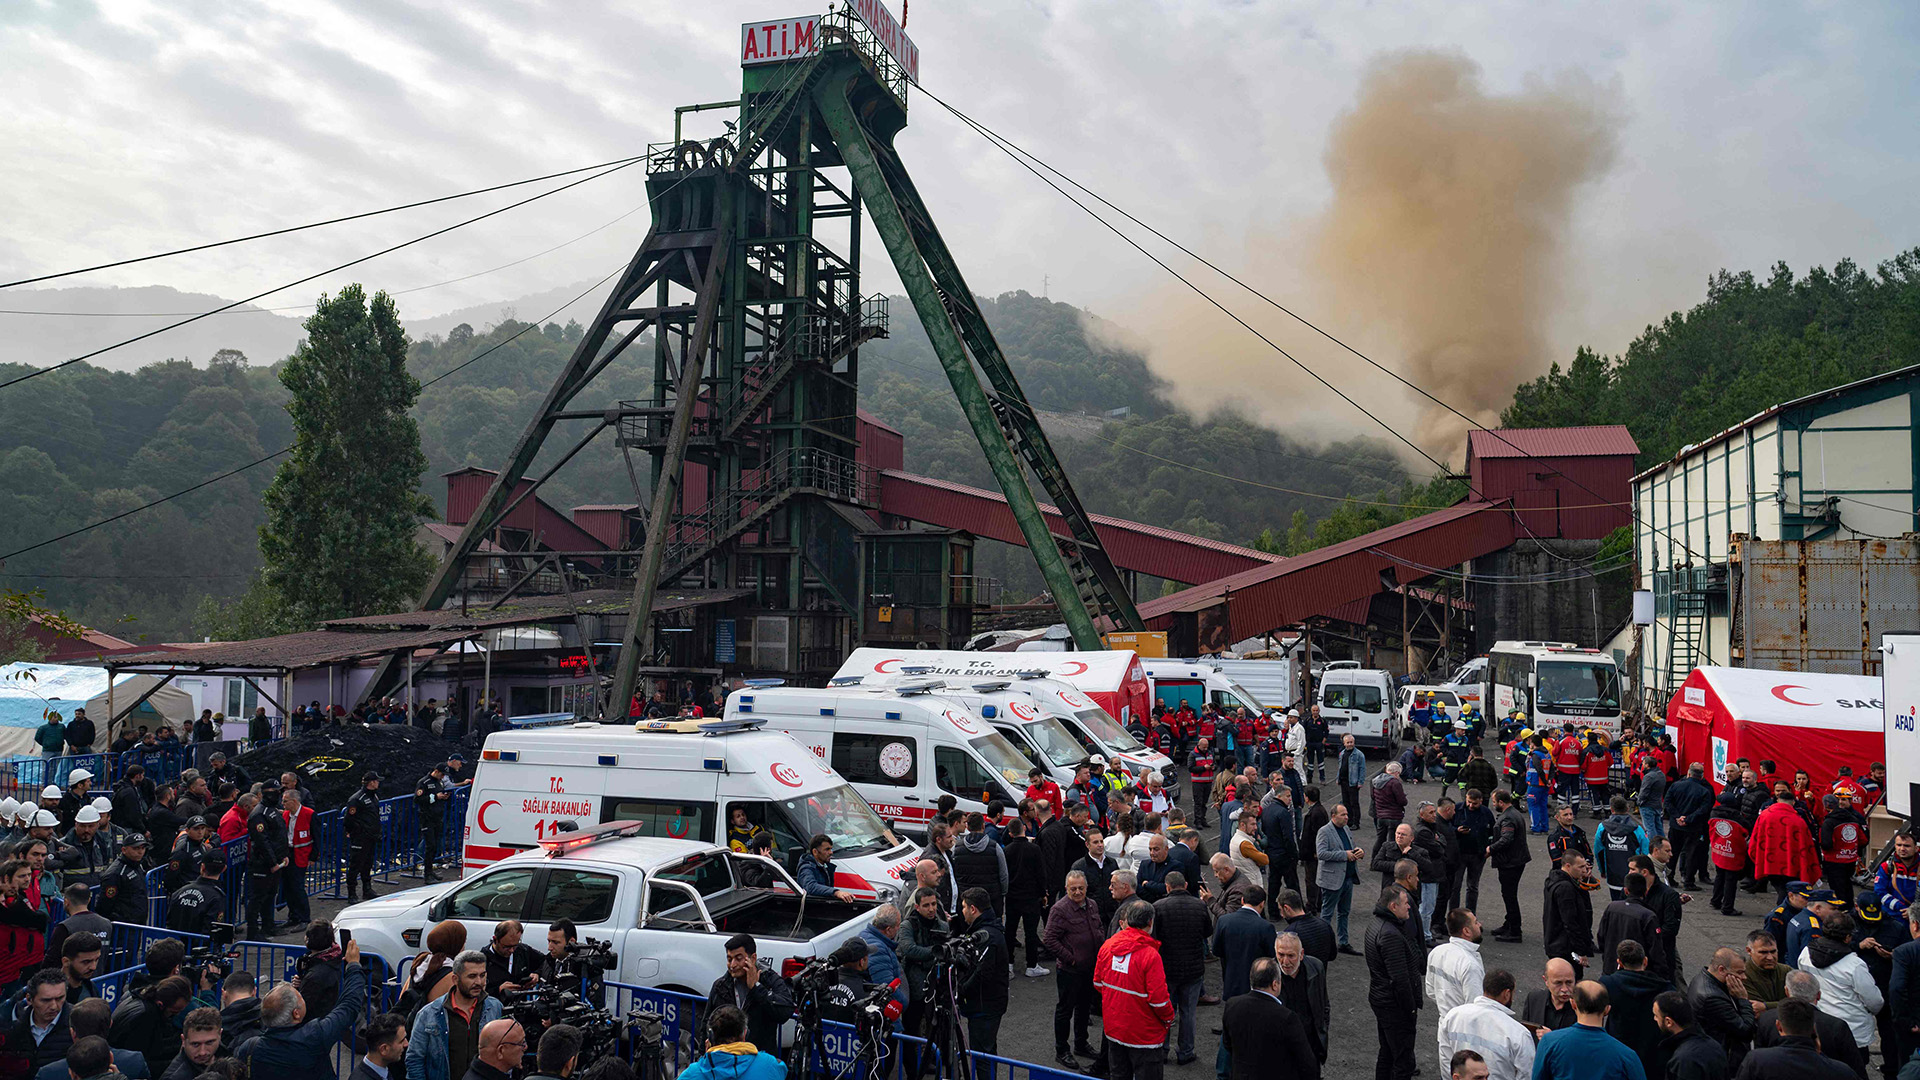 Menschen versammeln sich nach einer Explosion vor dem Kohlebergwerk. | AFP